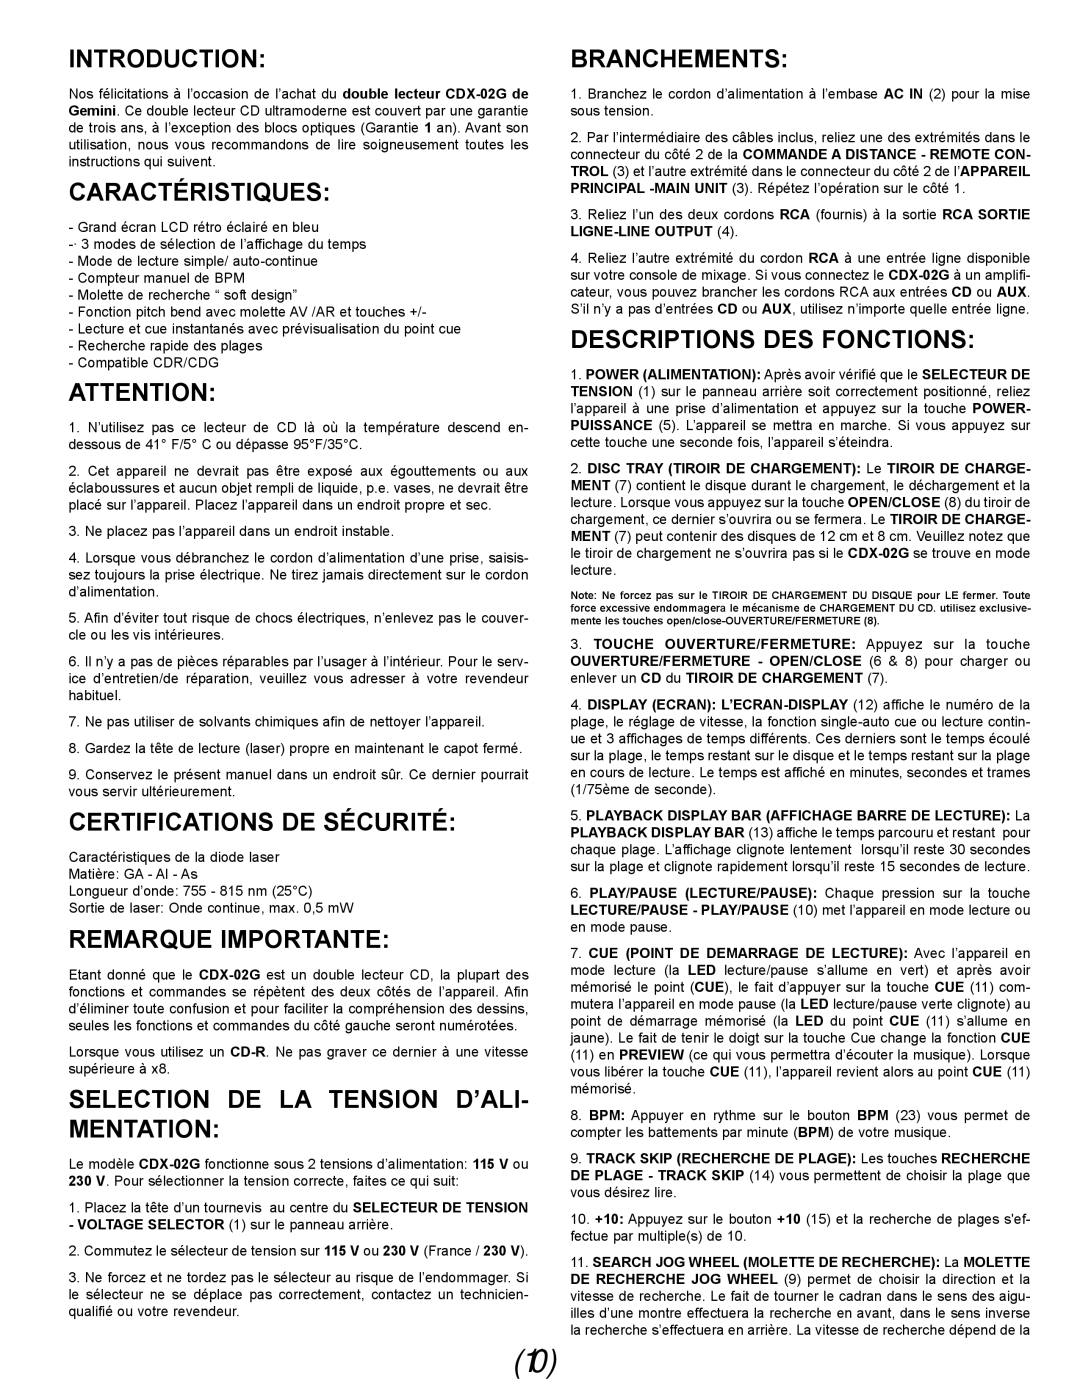 Gemini CDX-02G Caractéristiques, Certifications De Sécurité, Remarque Importante, Selection De La Tension D’Ali- Mentation 